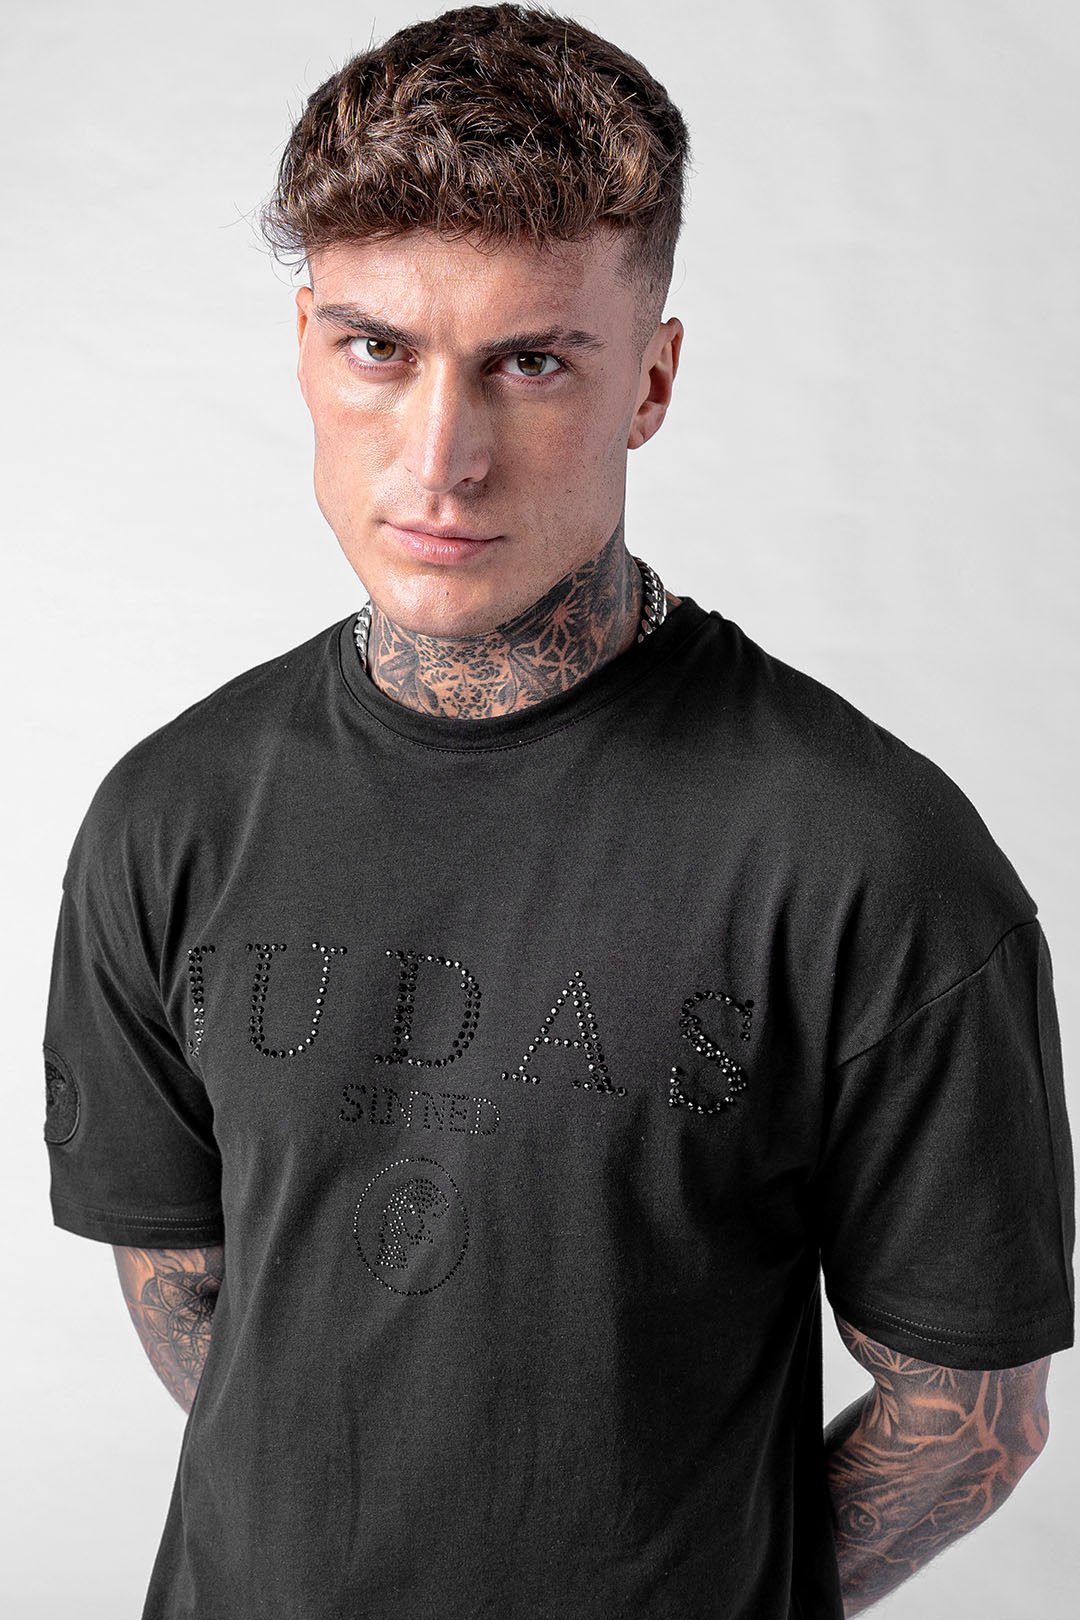 Rue Crystal Print Skull T-Shirt - Black, Small